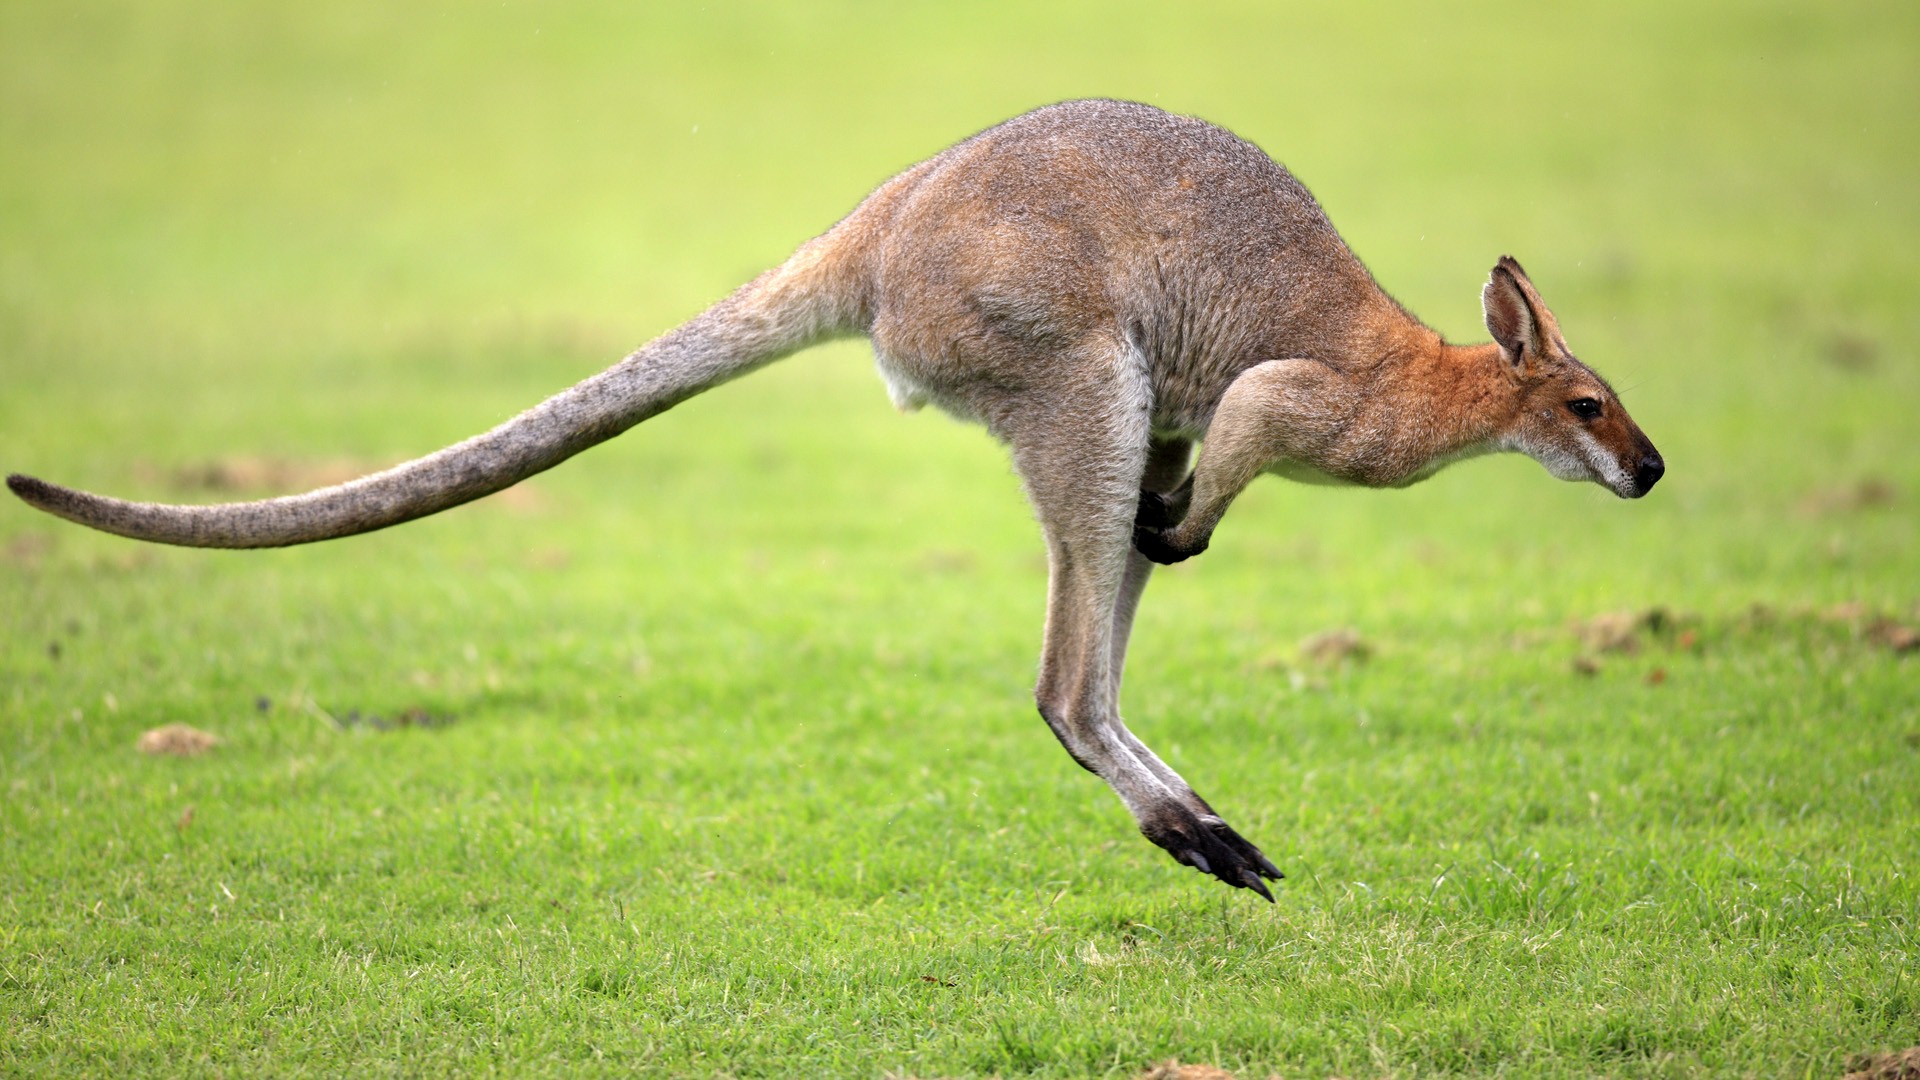 Kangaroo Pictures